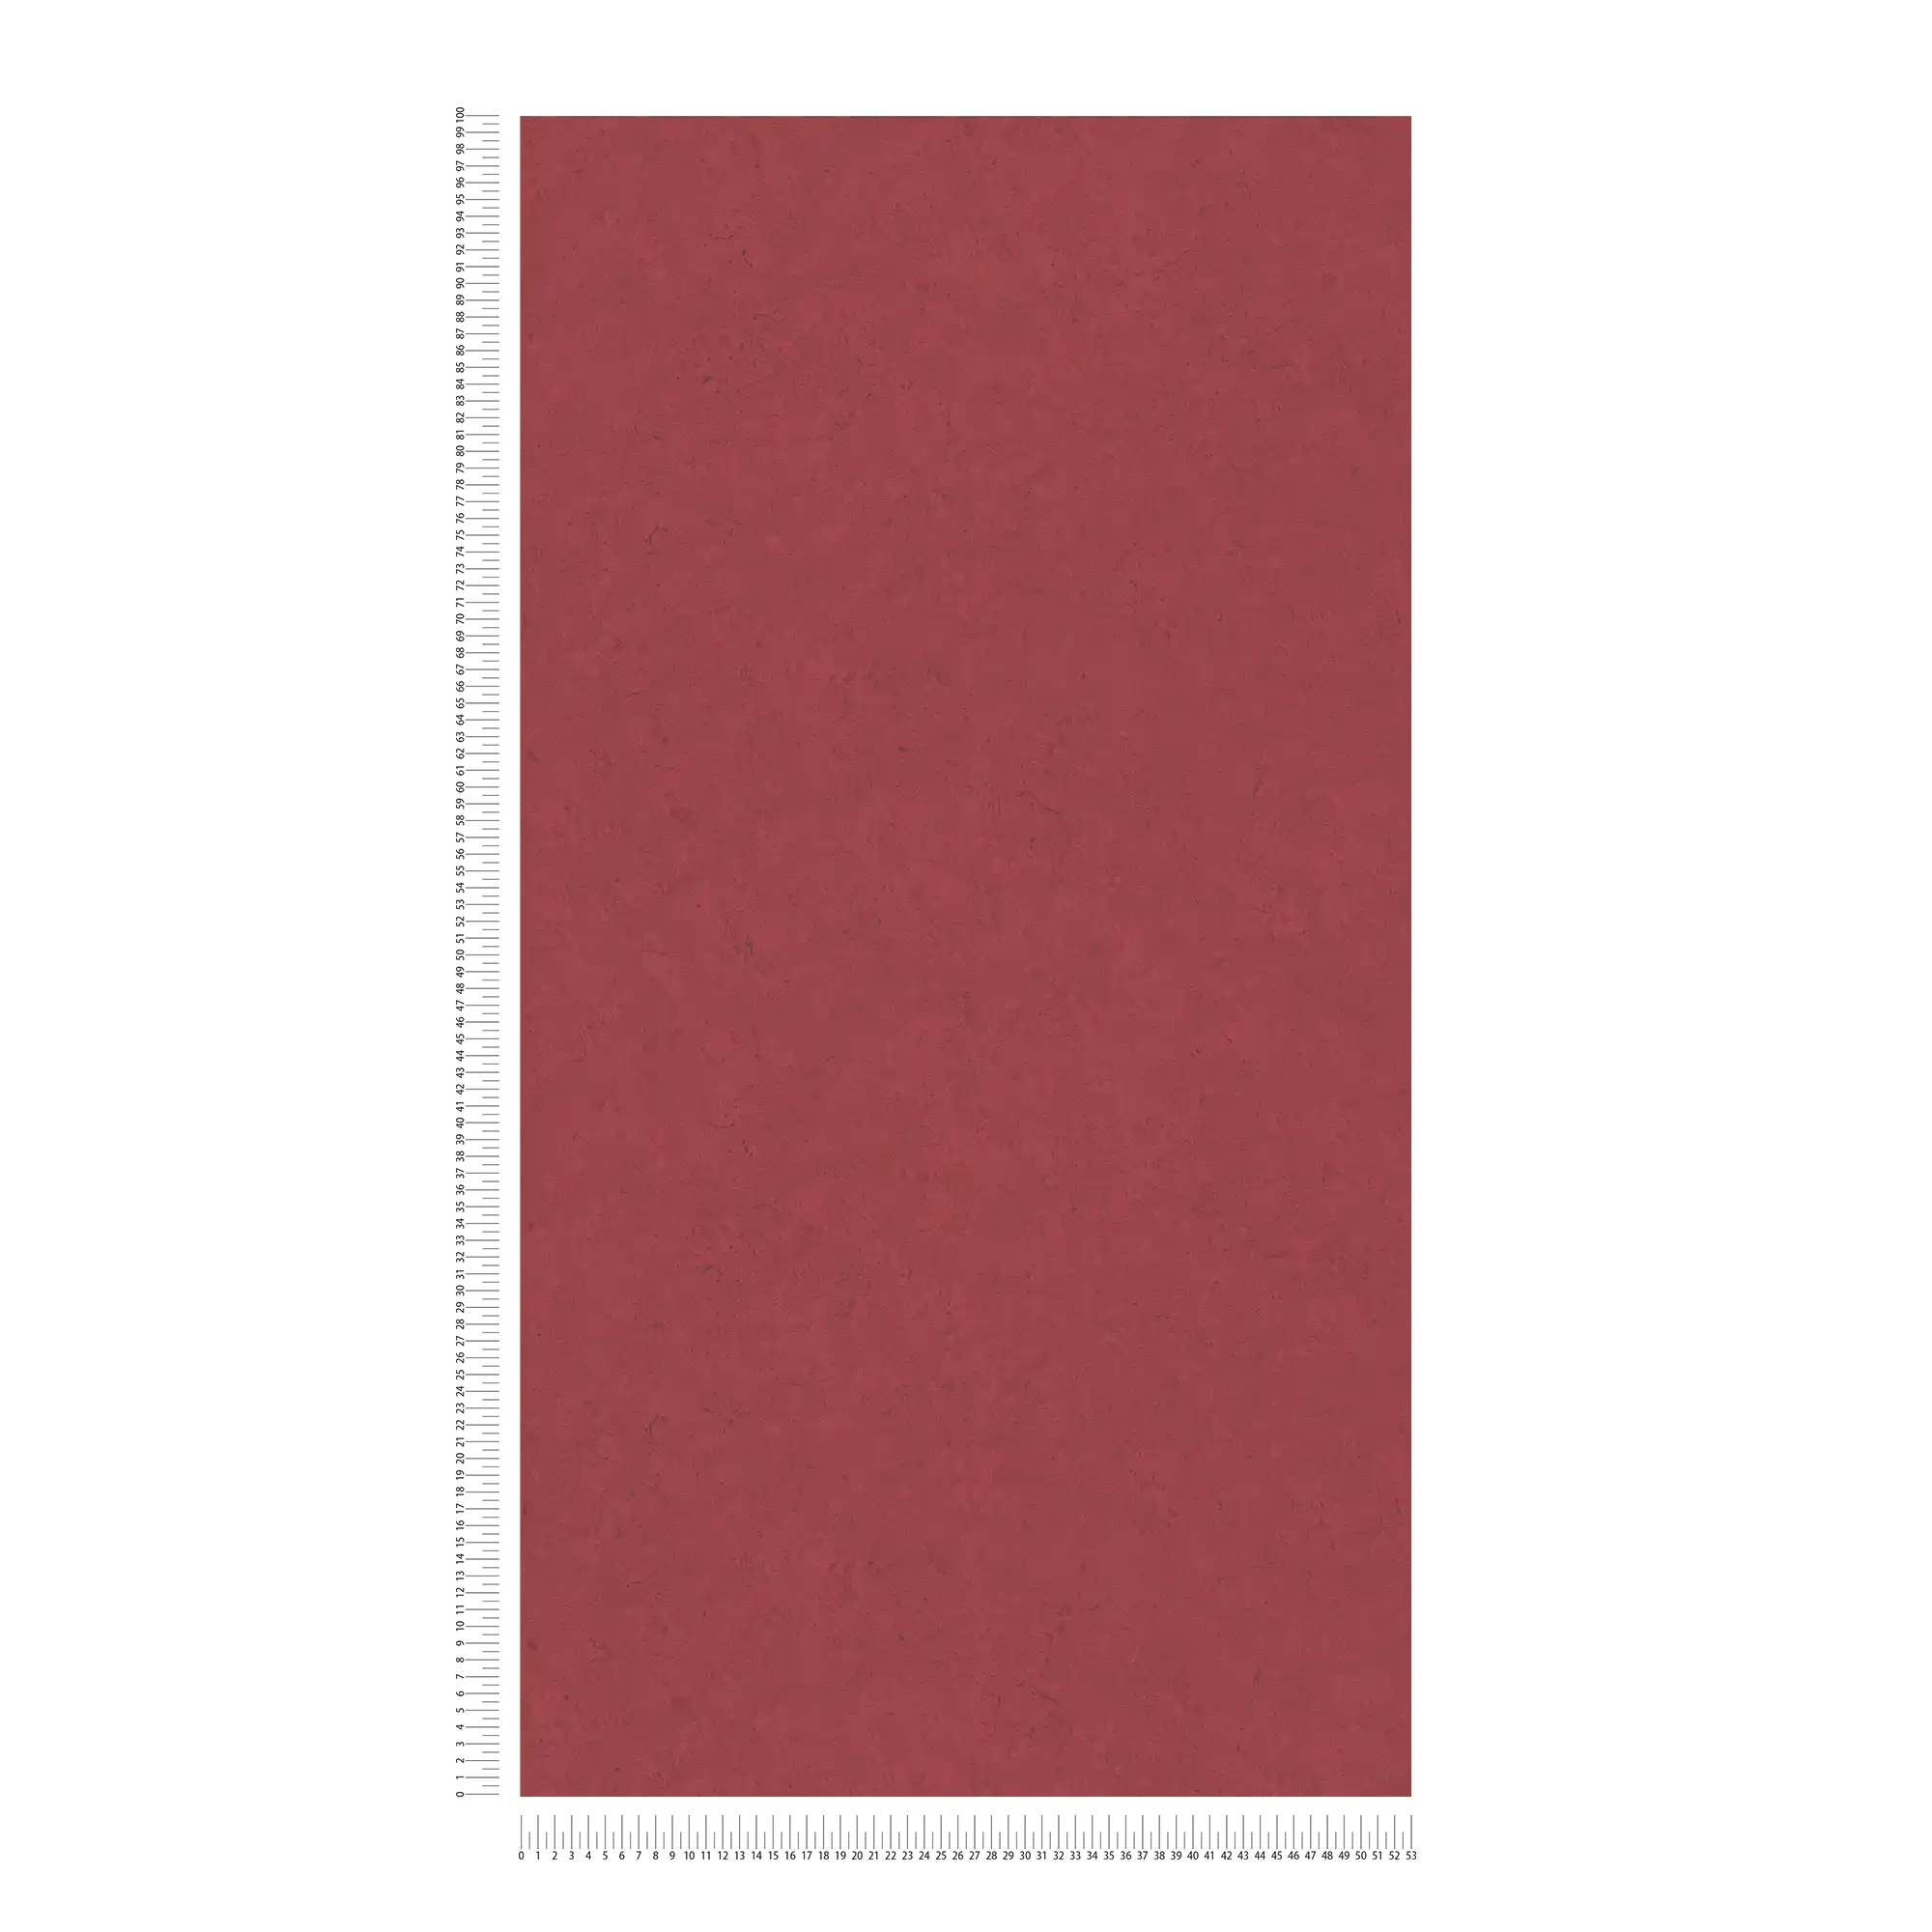             Papier peint intissé rouge cheminée aspect béton - rouge
        